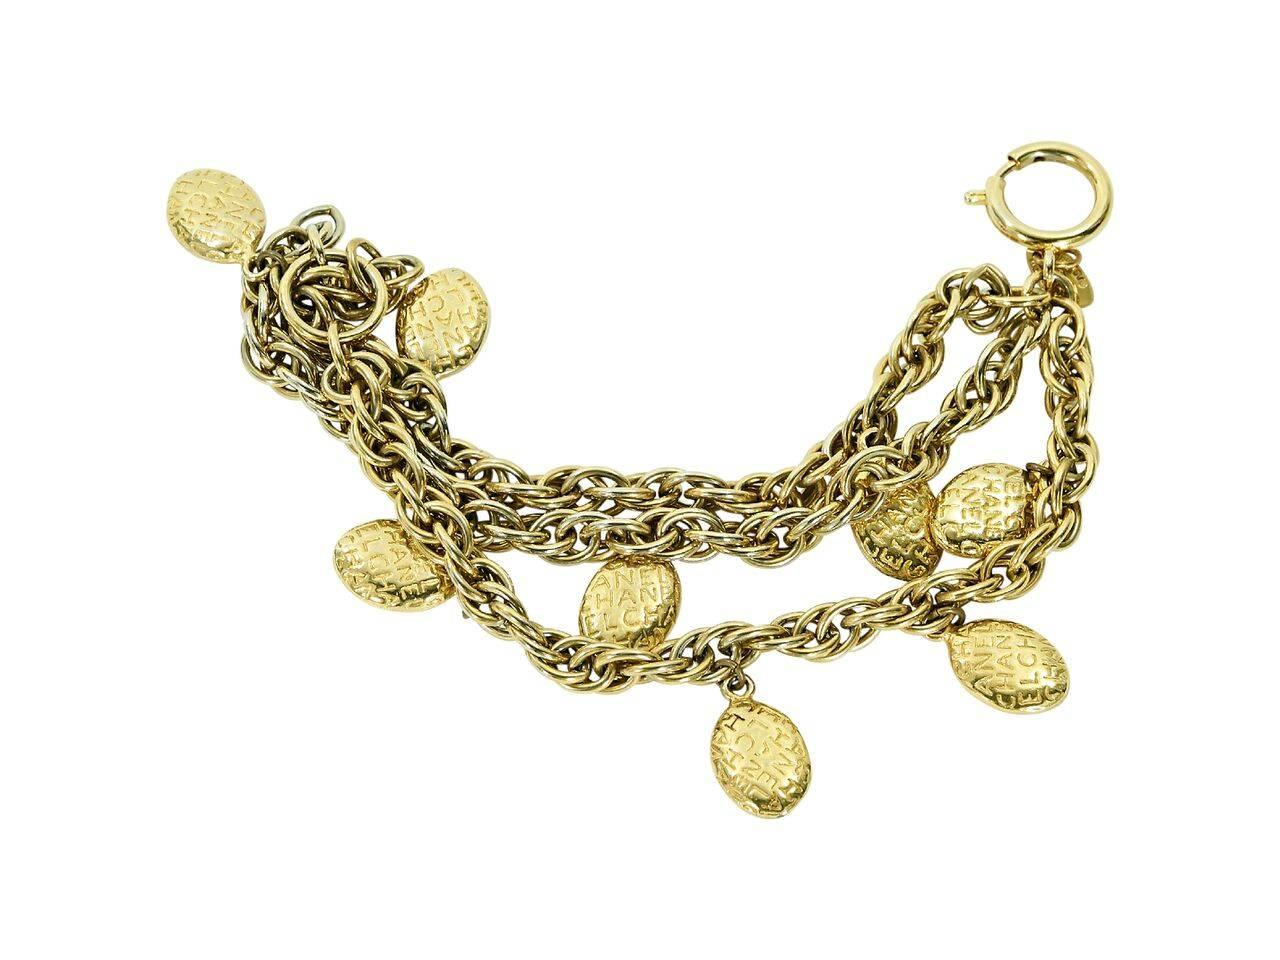 Product details:  Vintage goldtone charm bracelet by Chanel.  Multi-strand design.  Spring ring closure.  7.25